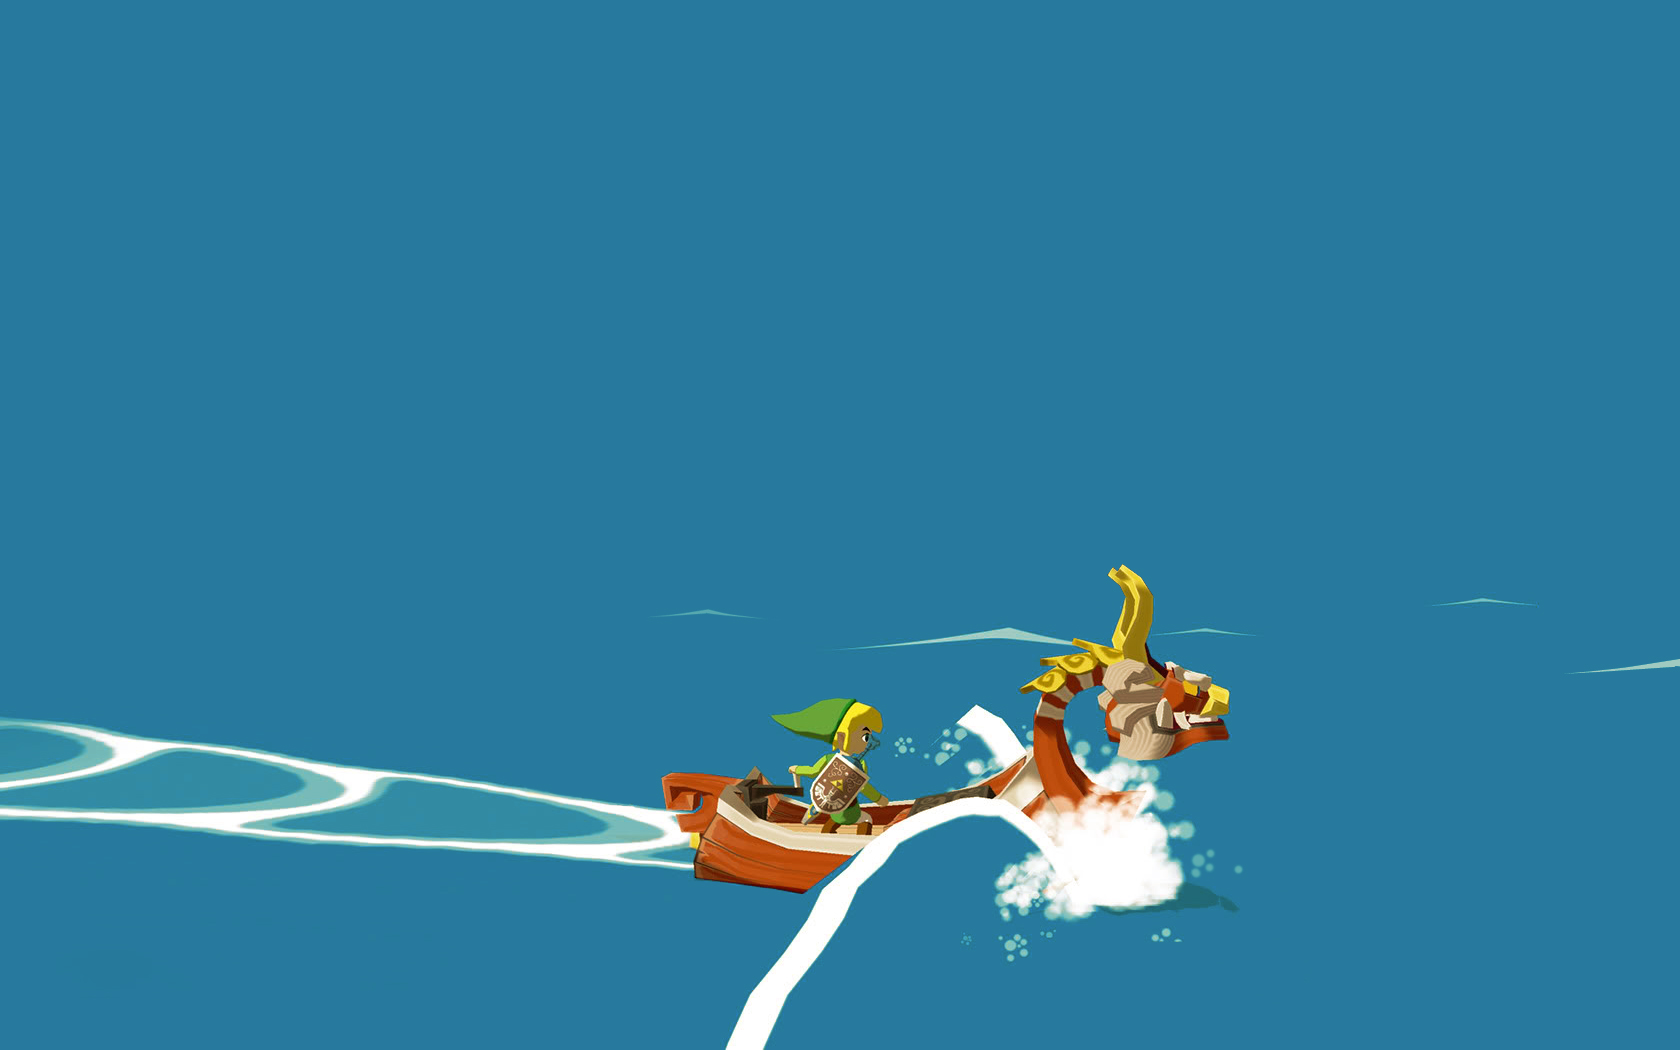 1001 Videojuegos que debes jugar: The Legend of Zelda - The Wind Waker 4